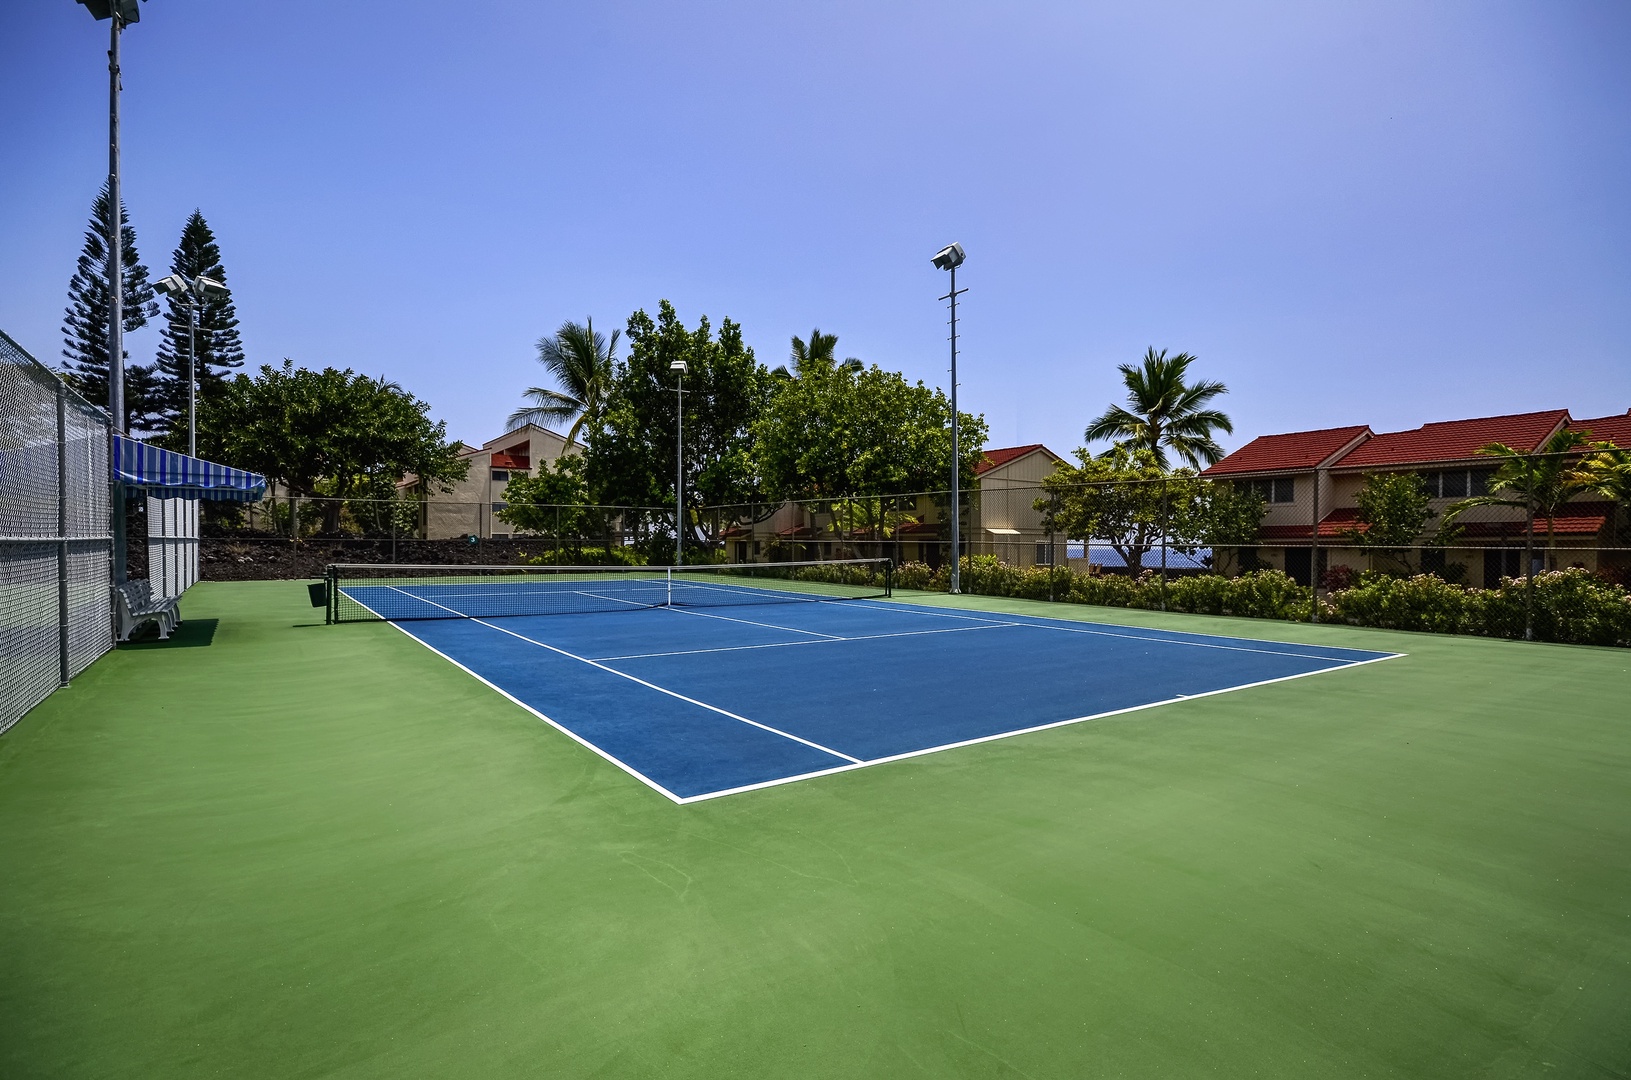 Kailua Kona Vacation Rentals, Keauhou Kona Surf & Racquet #48 - Keauhou Kona Surf & Racquet Tennis Courts